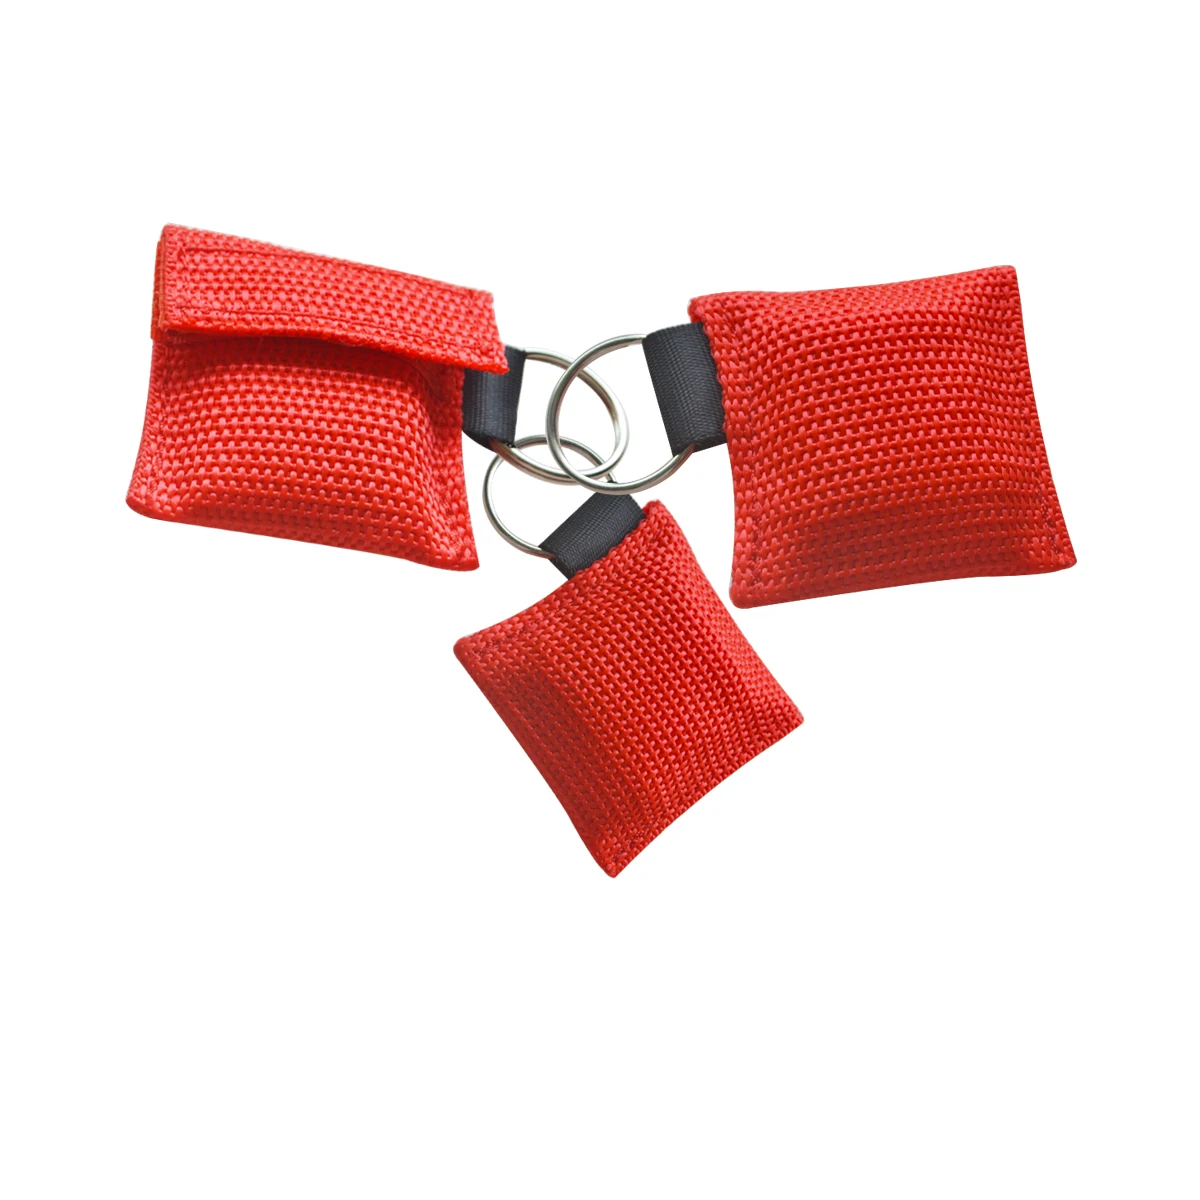 100 шт. маска для искусственного дыхания при реанимации с брелком красный плетеный мешок Первая помощь Защита лица искусственный дыхательный барьер инструмент для здравоохранения